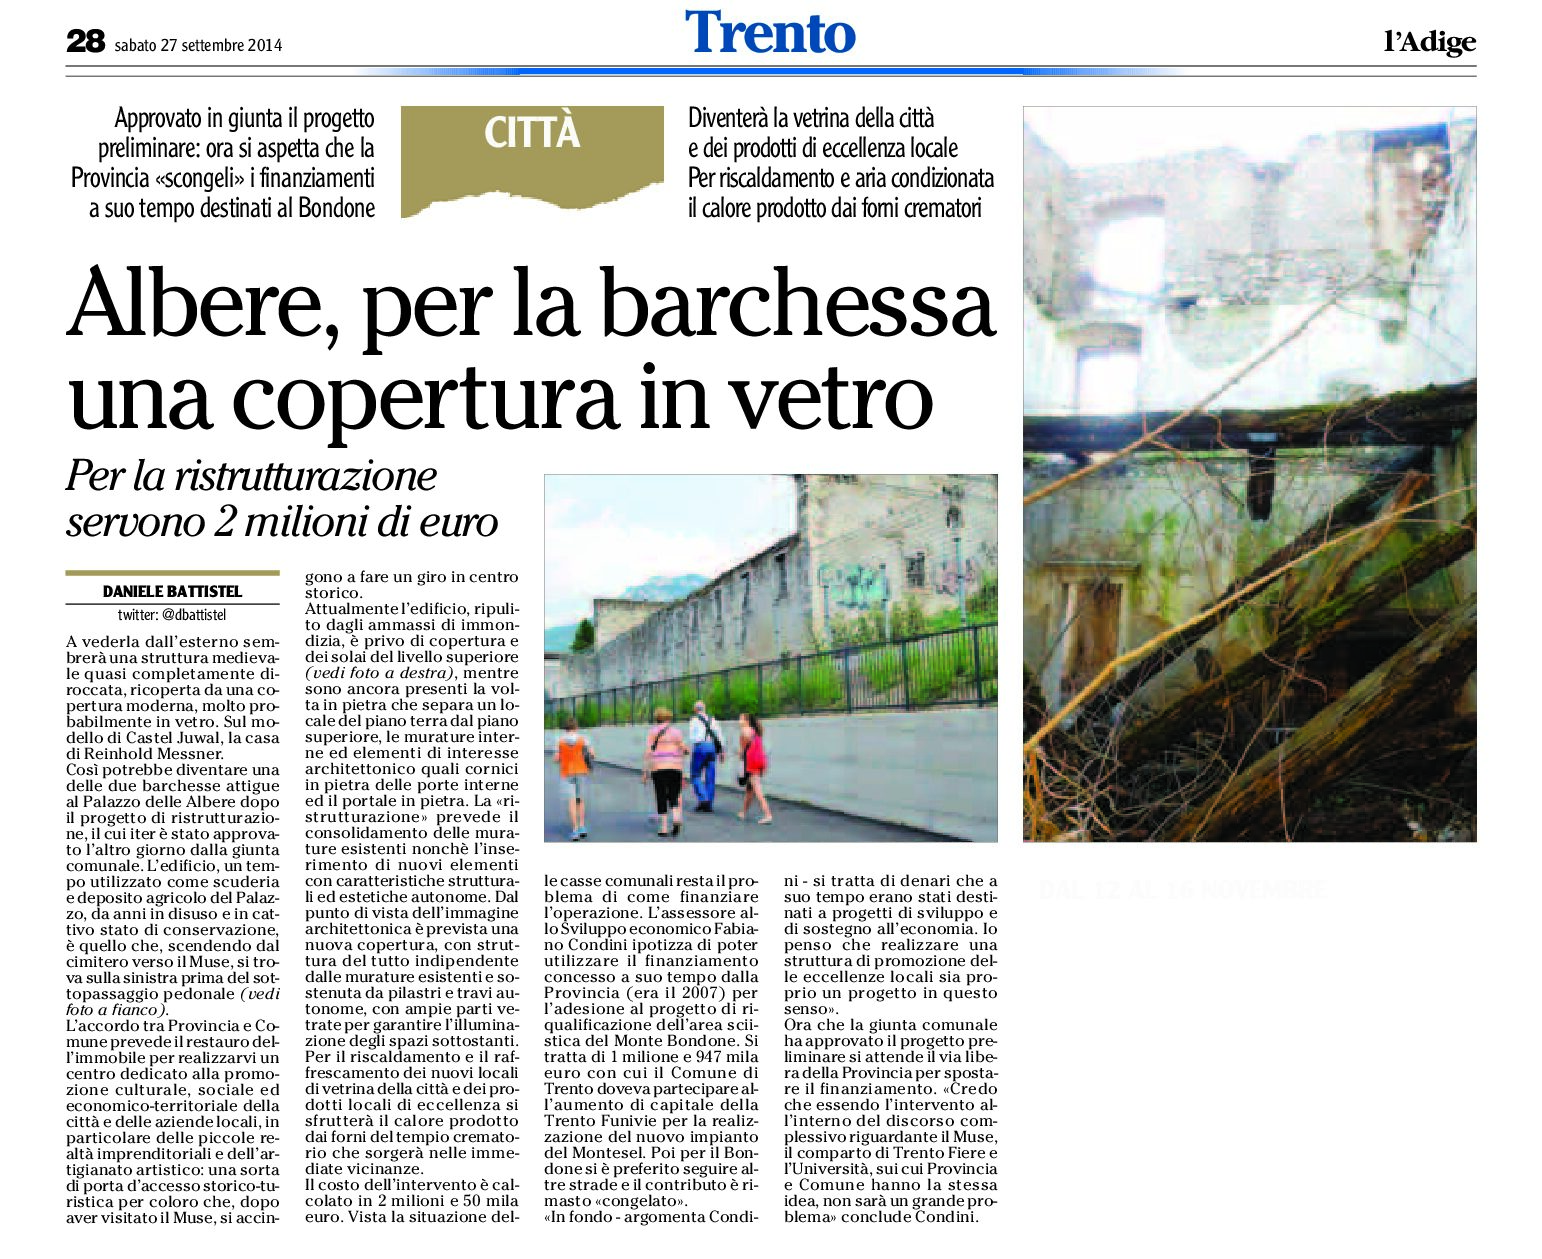 Trento, Albere: per la barchessa una copertura in vetro